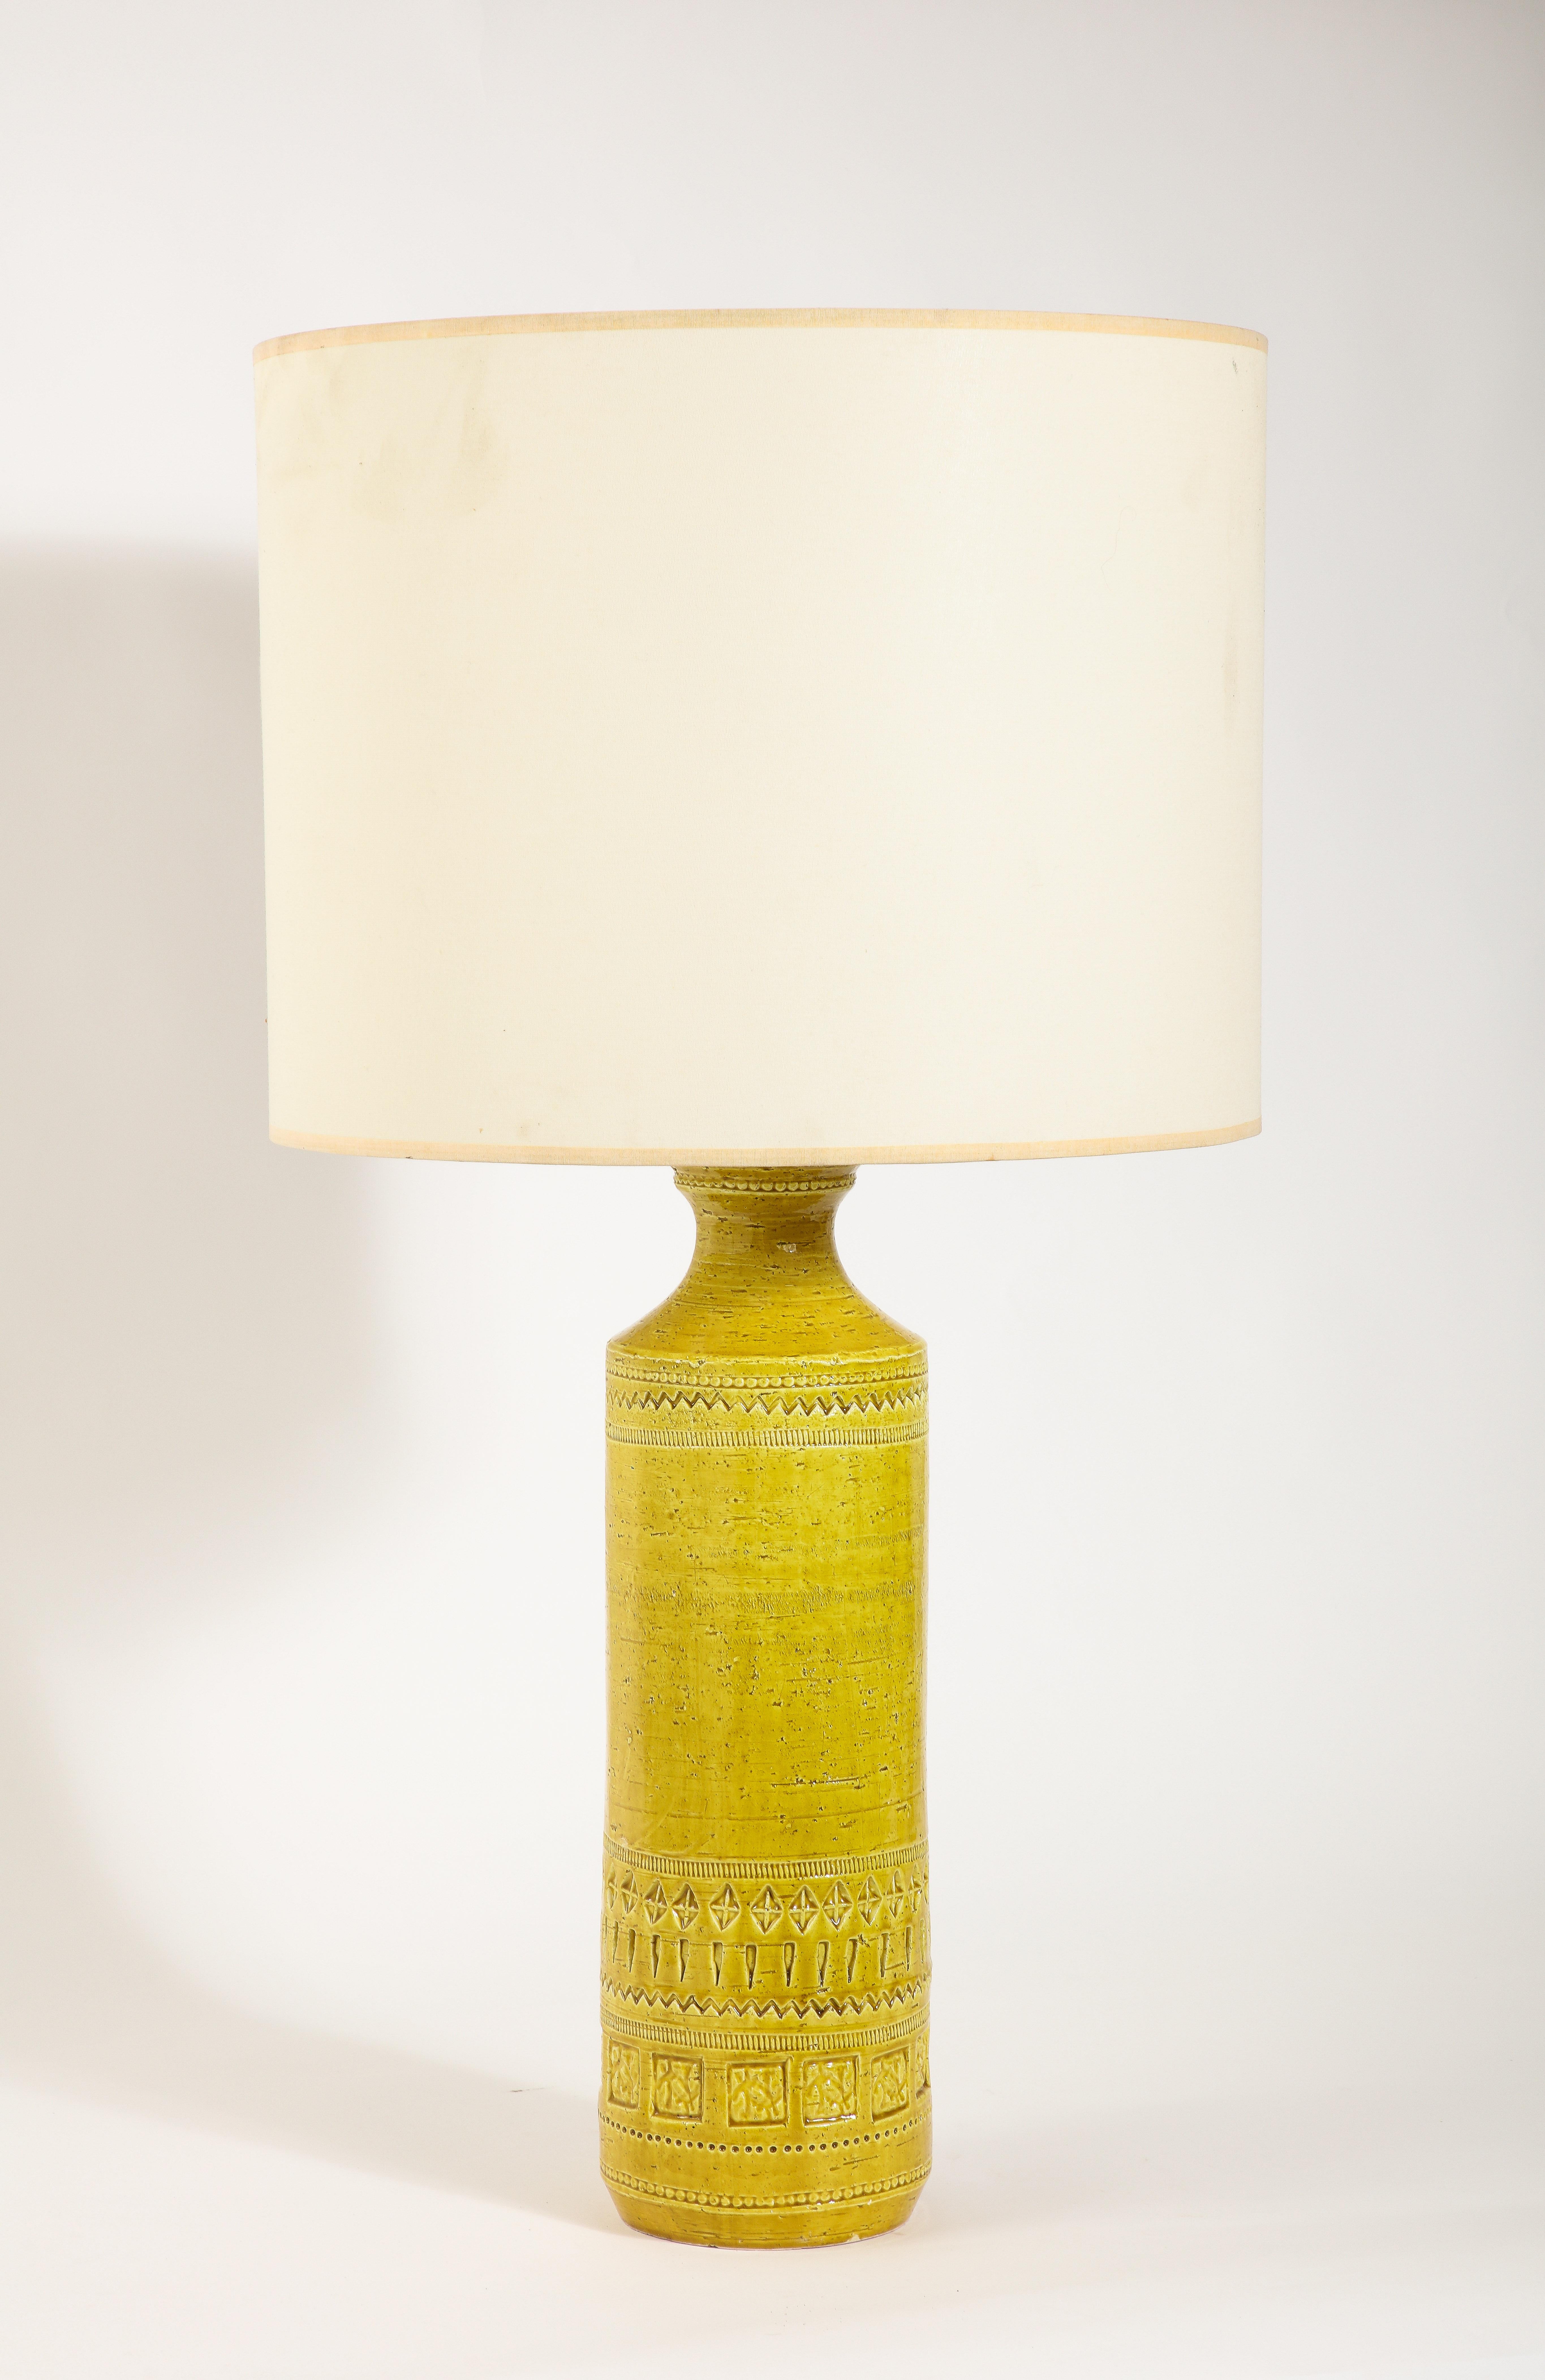 Grandes lampes de table en céramique incisée à la riche glaçure jaune.

25x7 Base seule